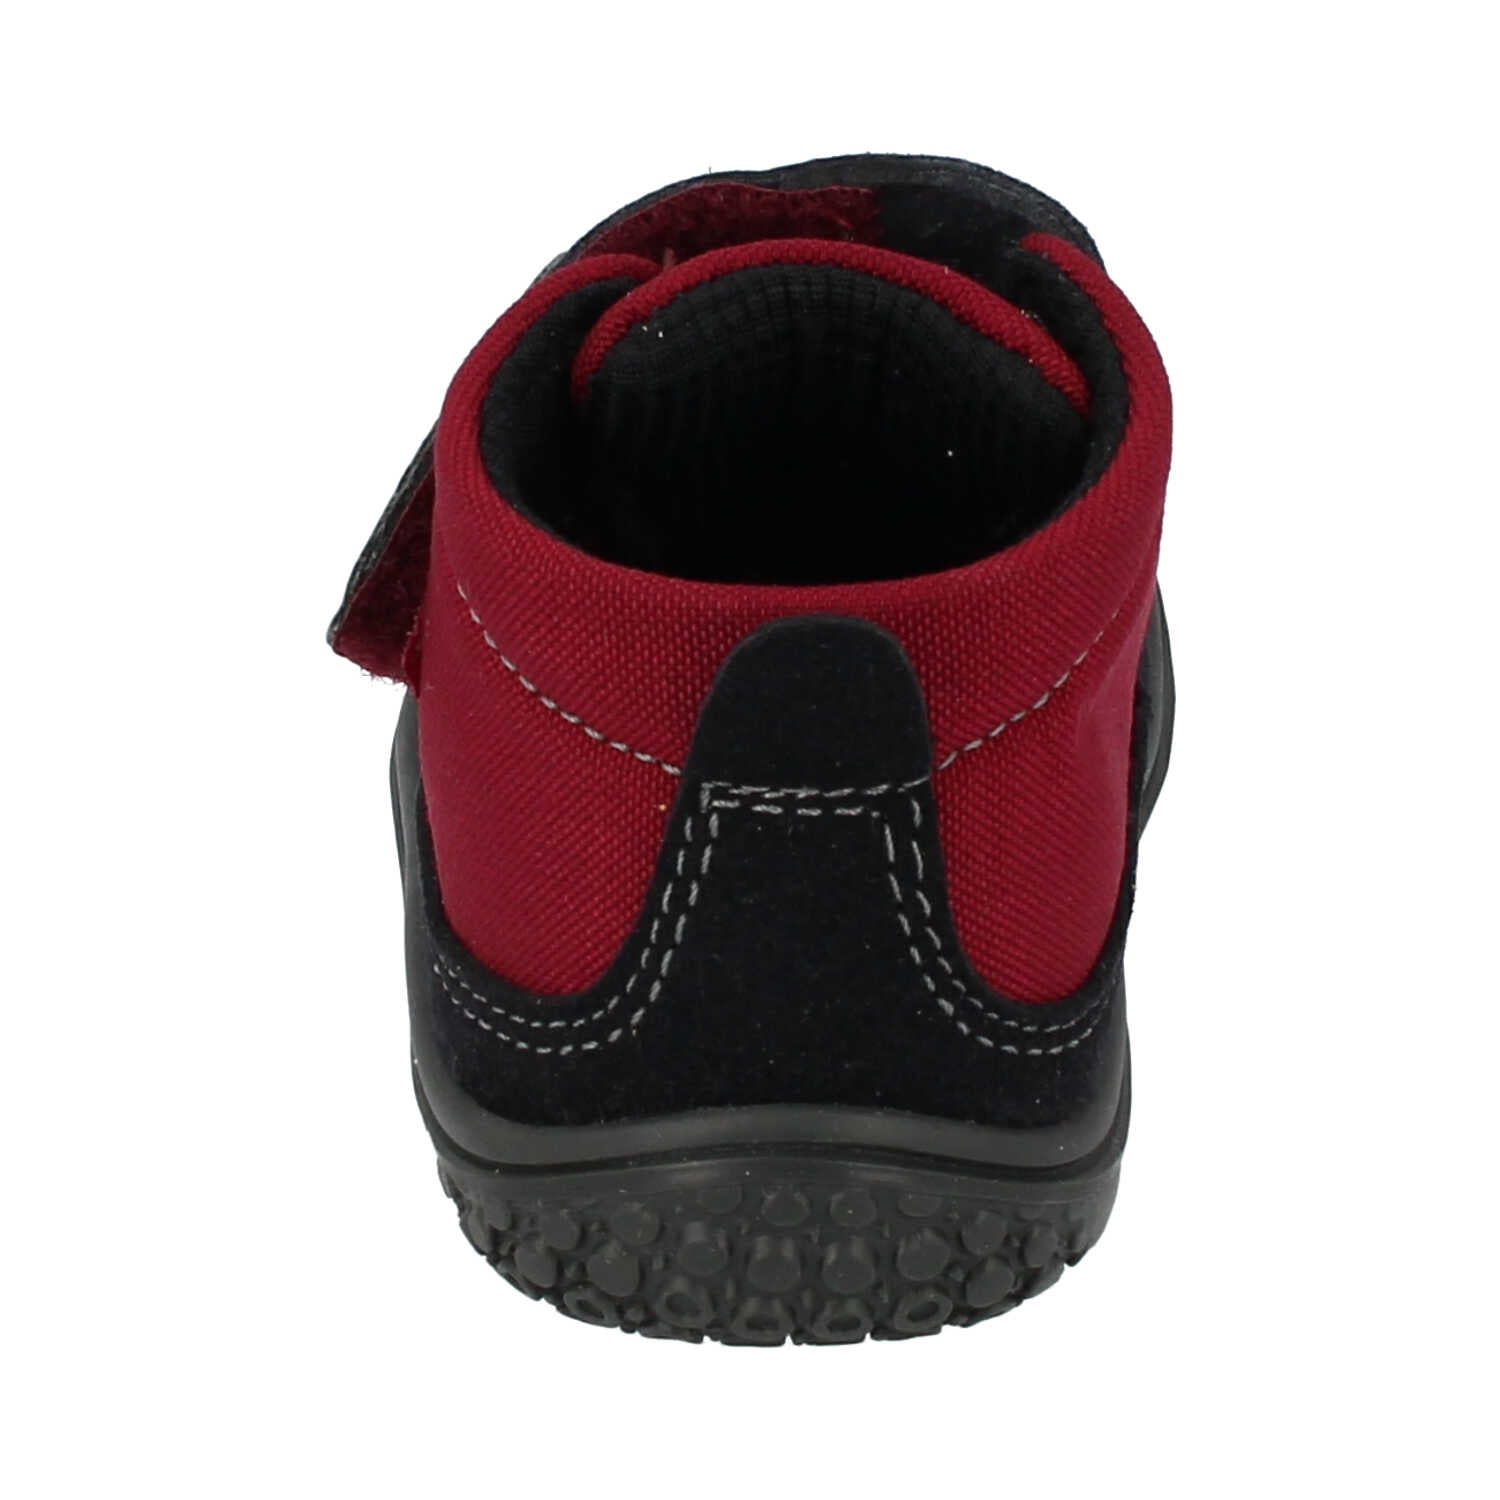 Filii Viper Velcro "Medium" barfods high sneakers til børn i farven berry, bagfra